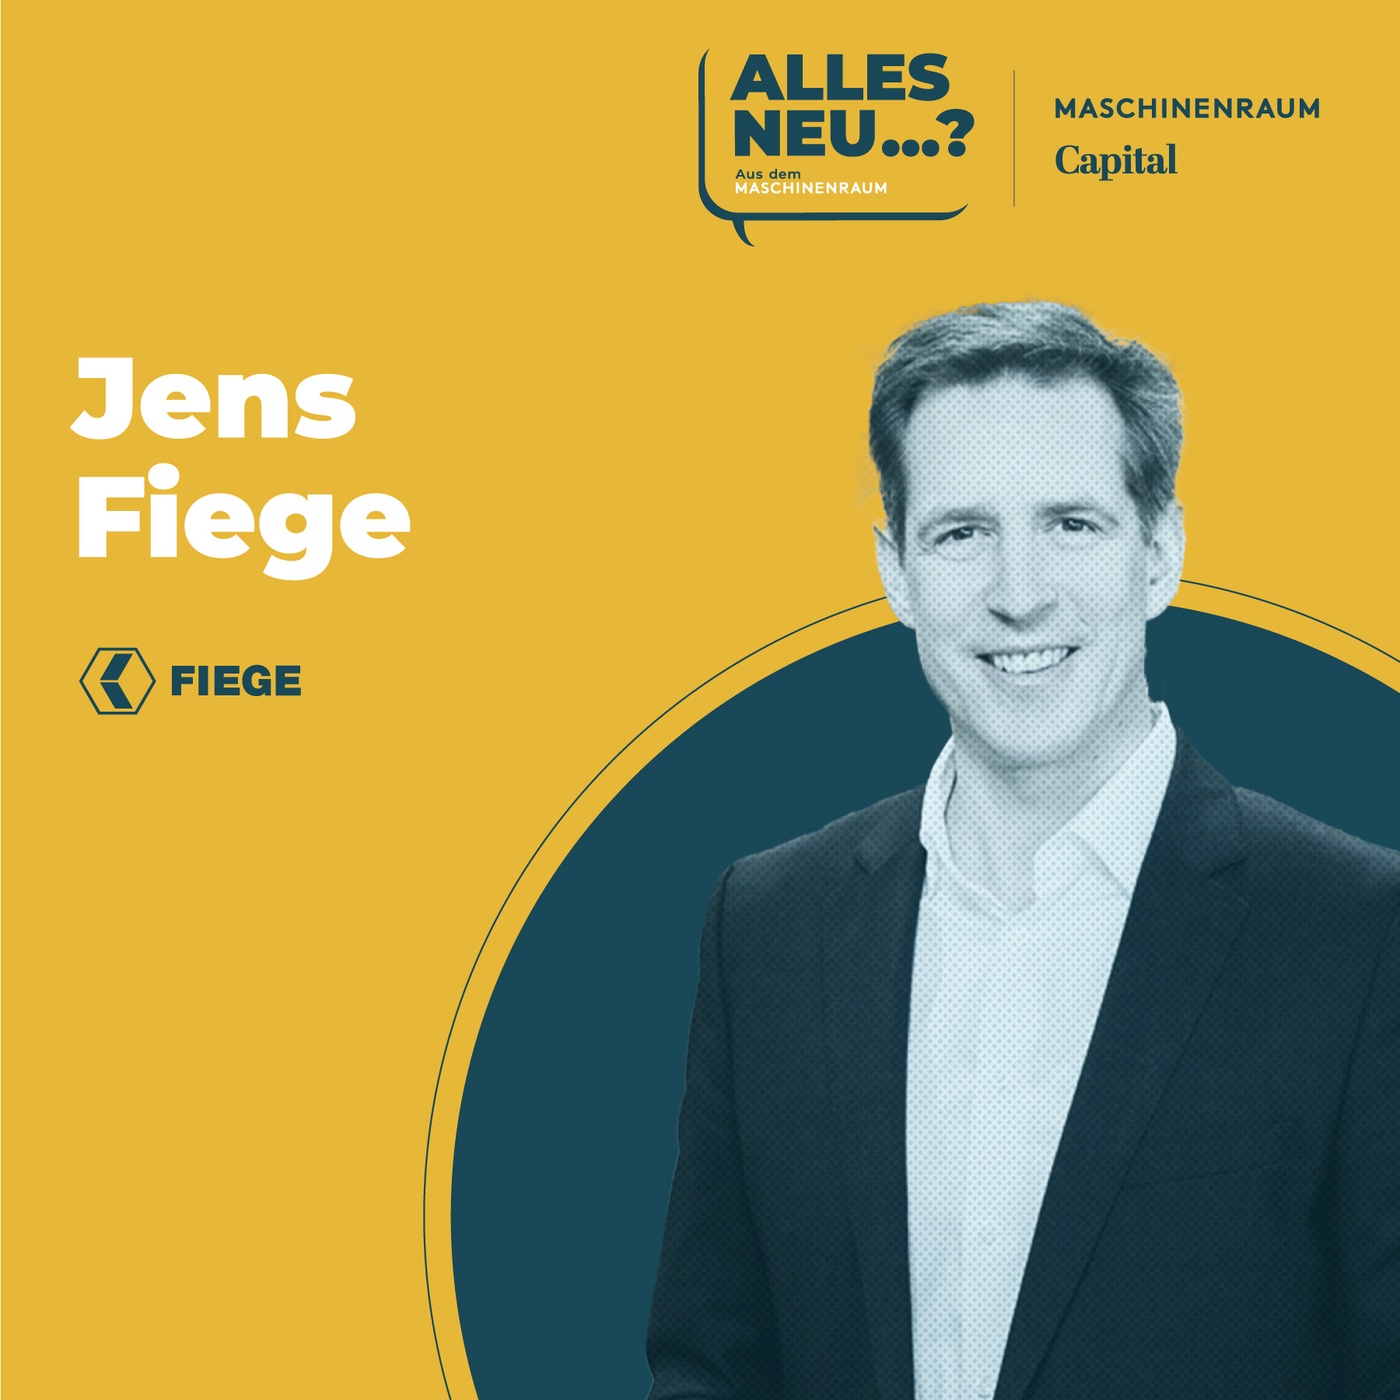 Jens Fiege | Fiege Group: „Wir sind immer auf der Suche nach neuen Geschäftsmodellen